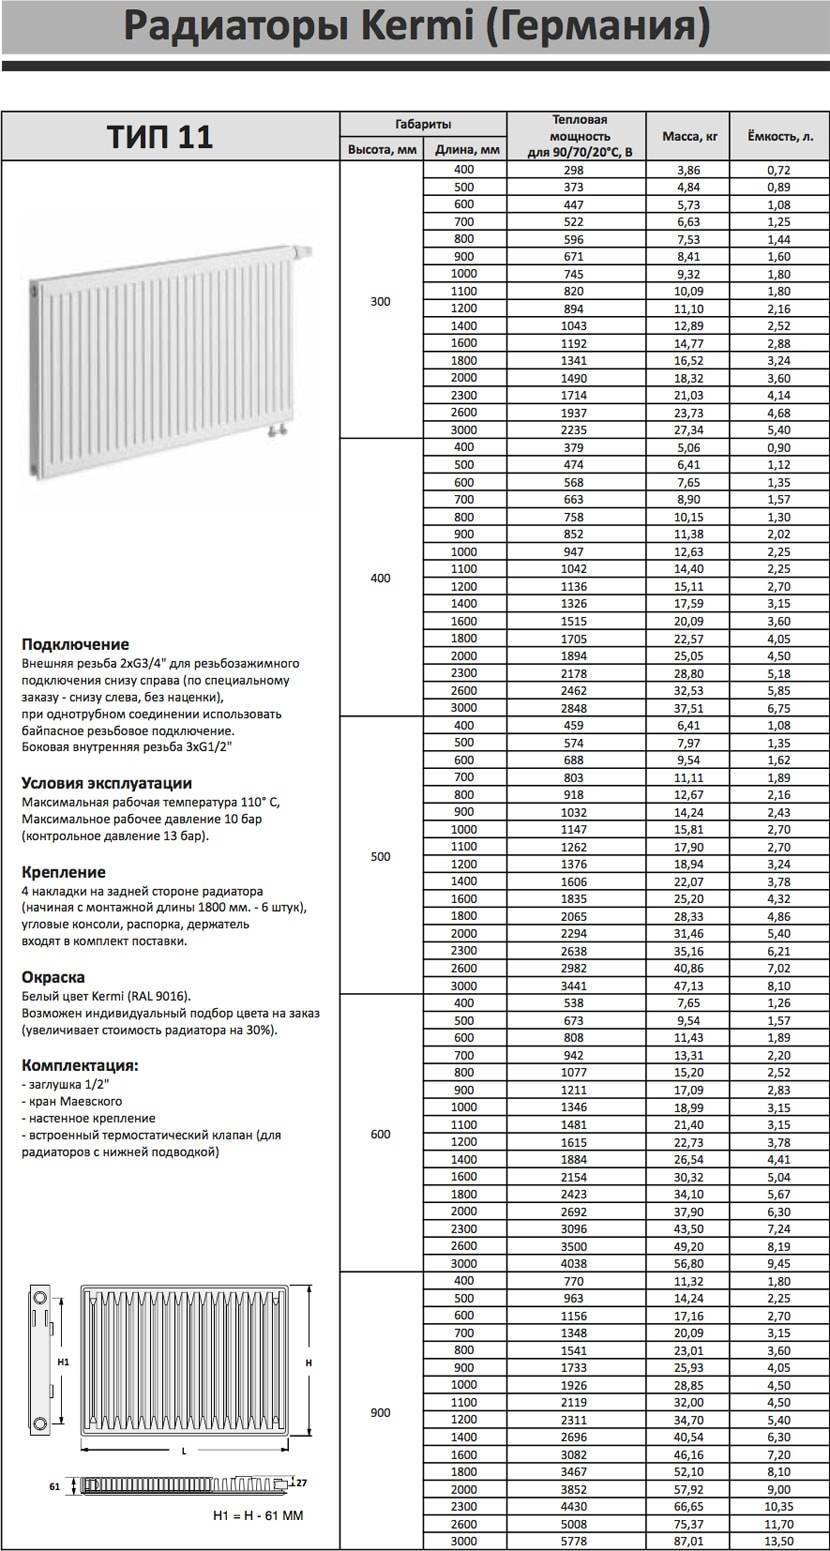 Панельные радиаторы отопления: мощность батарей, как установить отопительные приборы